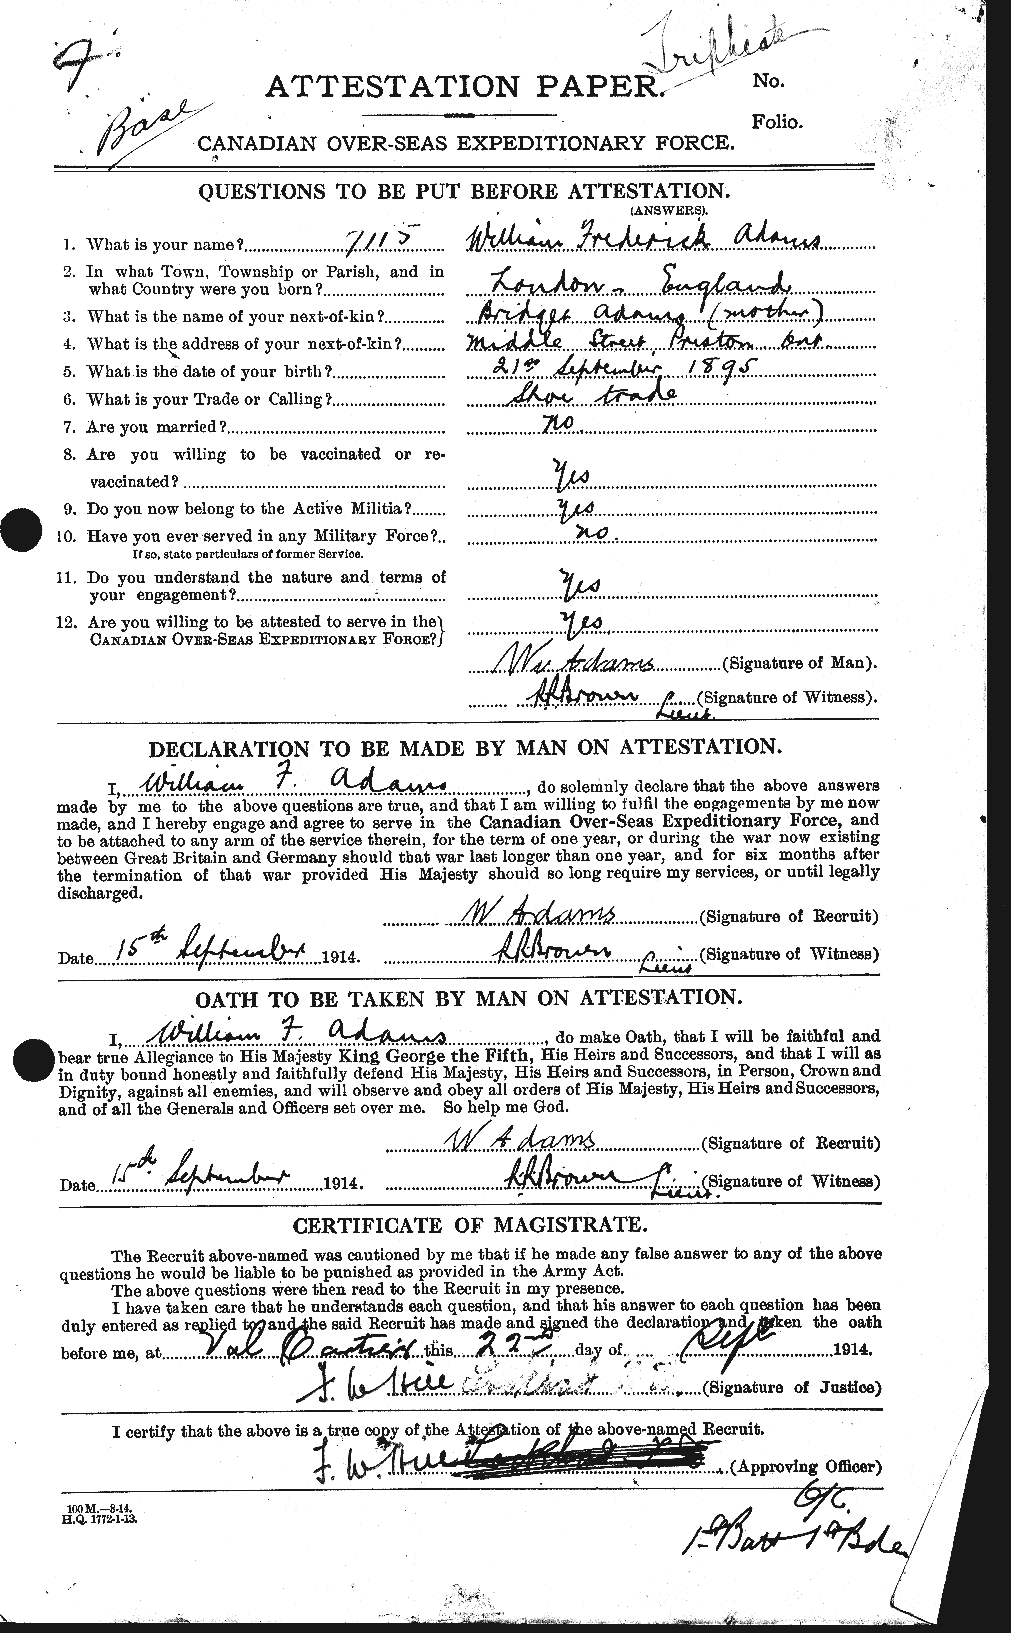 Dossiers du Personnel de la Première Guerre mondiale - CEC 202251a